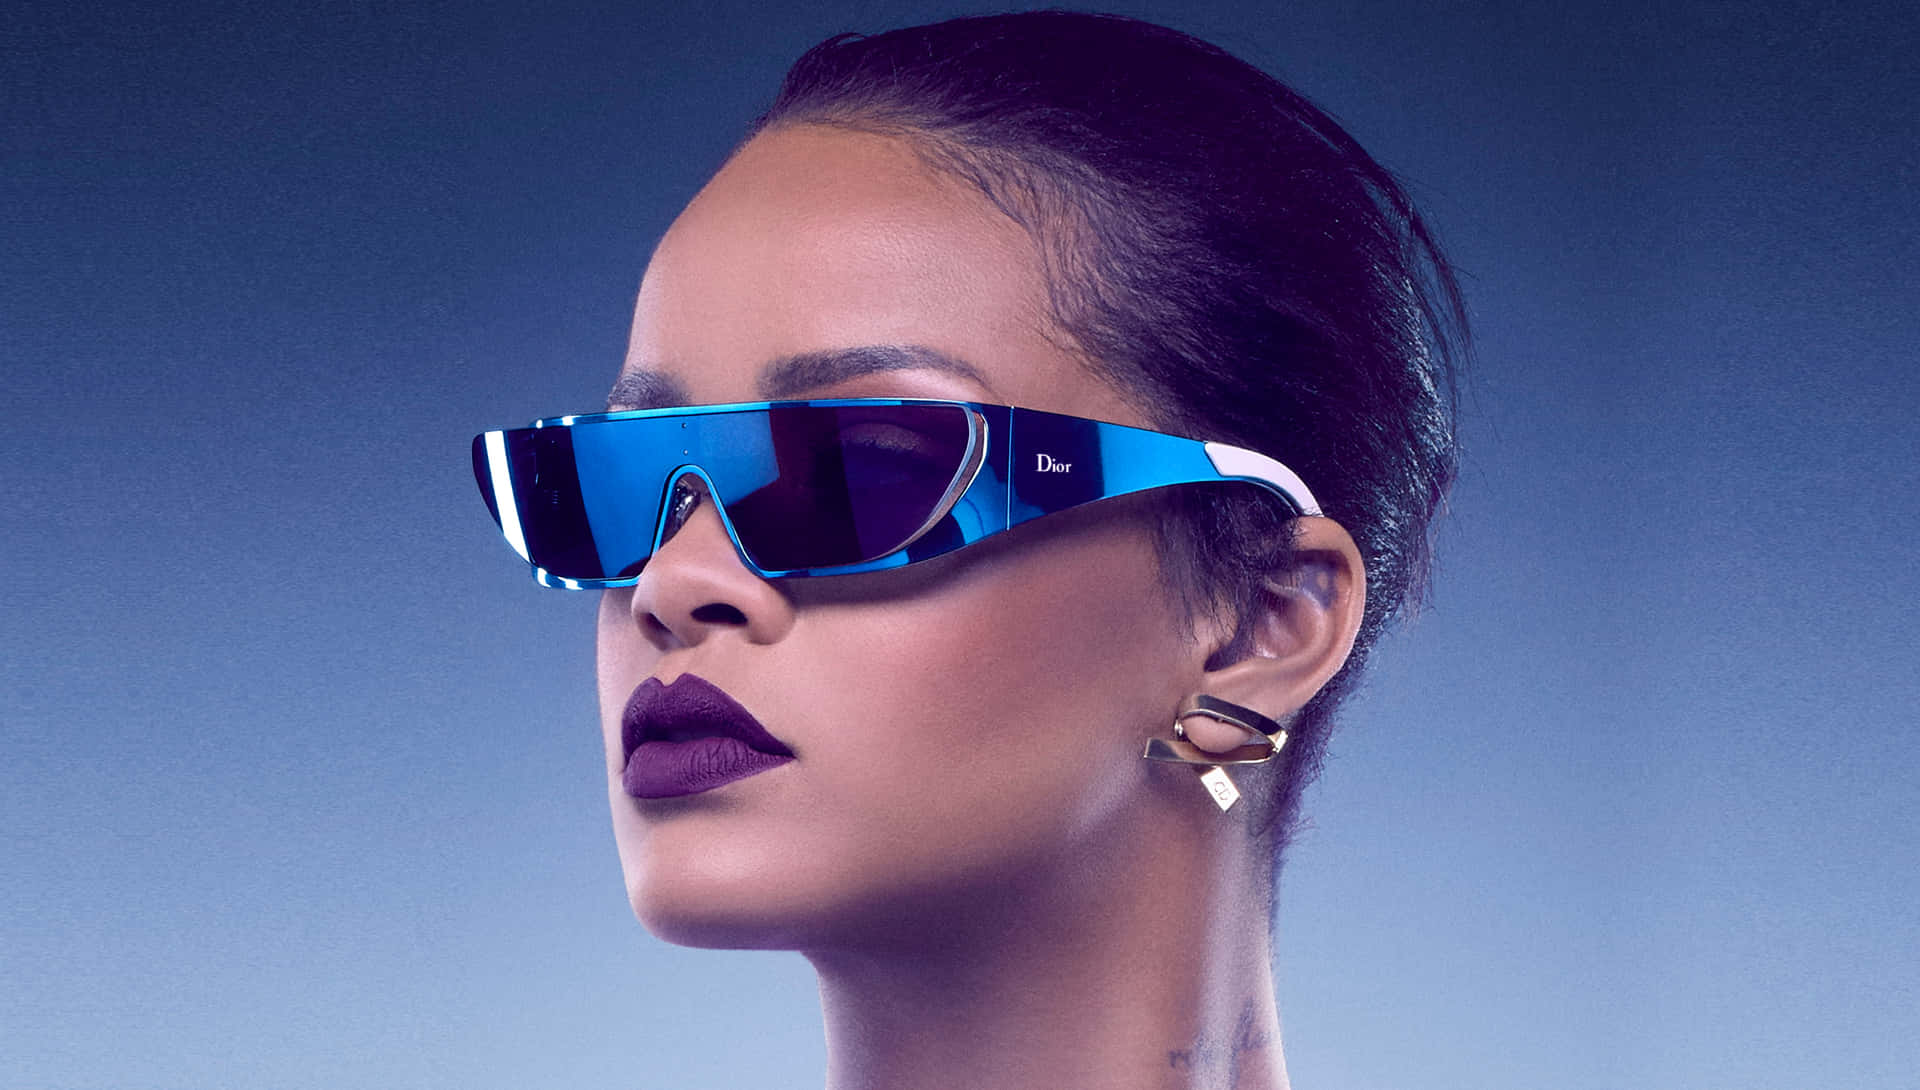 Rihannaäger Sin Individuella Stil Och Modeflärd.